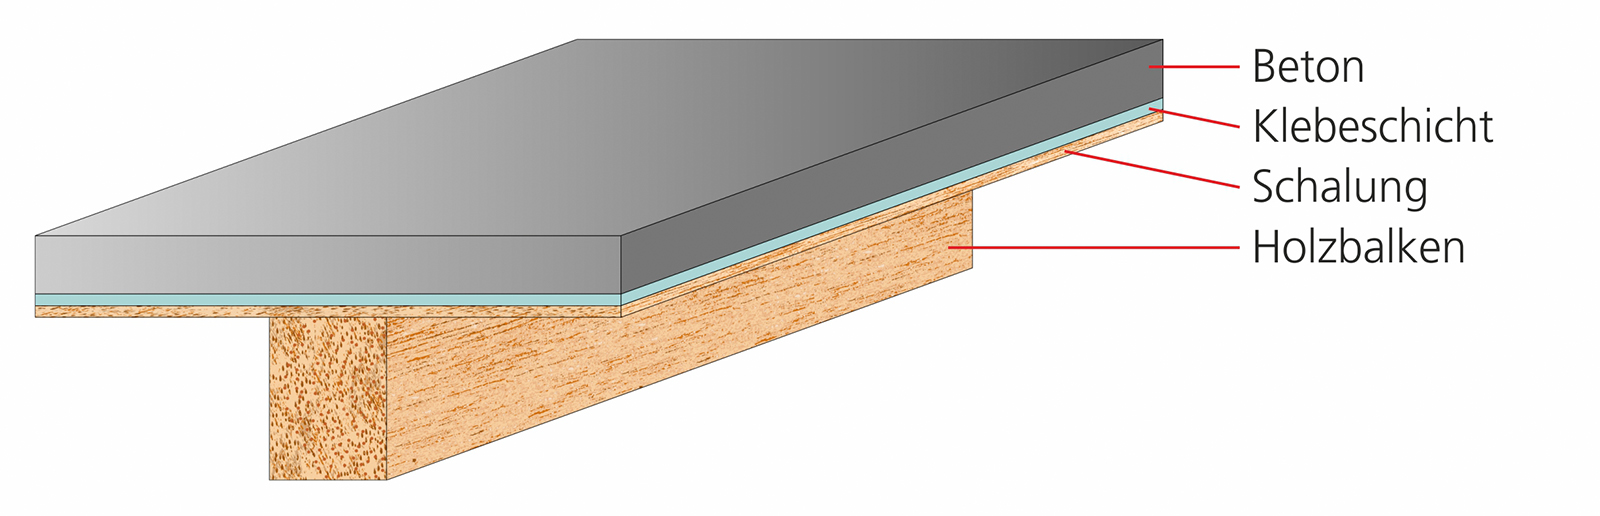 Beispielhafter Aufbau einer Deckenplatte im Holz-Beton-Verbundsystem (HBV).